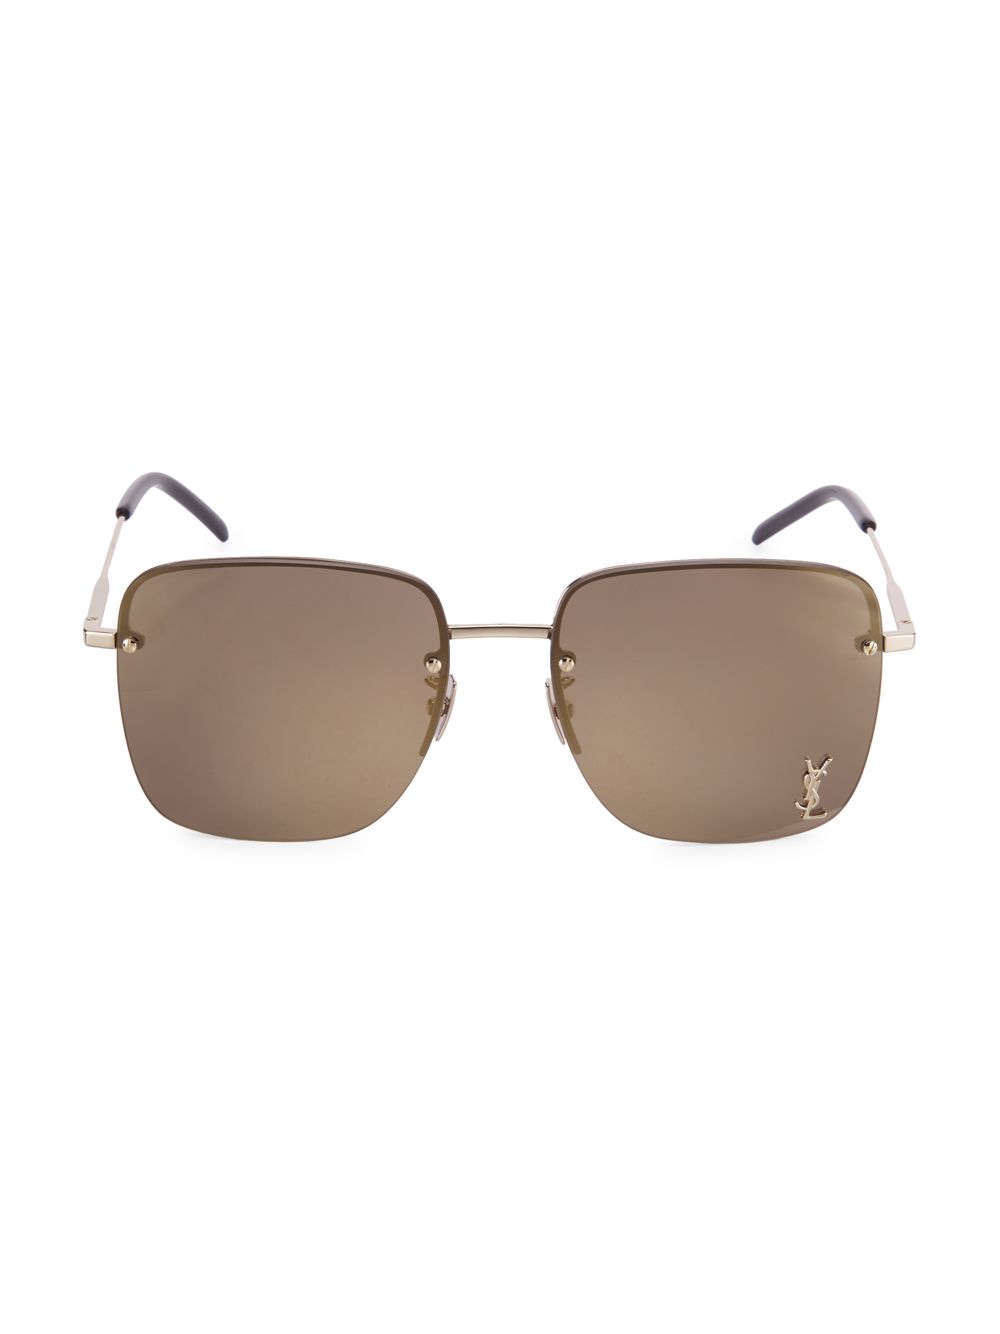 Квадратные солнцезащитные очки Monogram 58MM Saint Laurent, коричневый